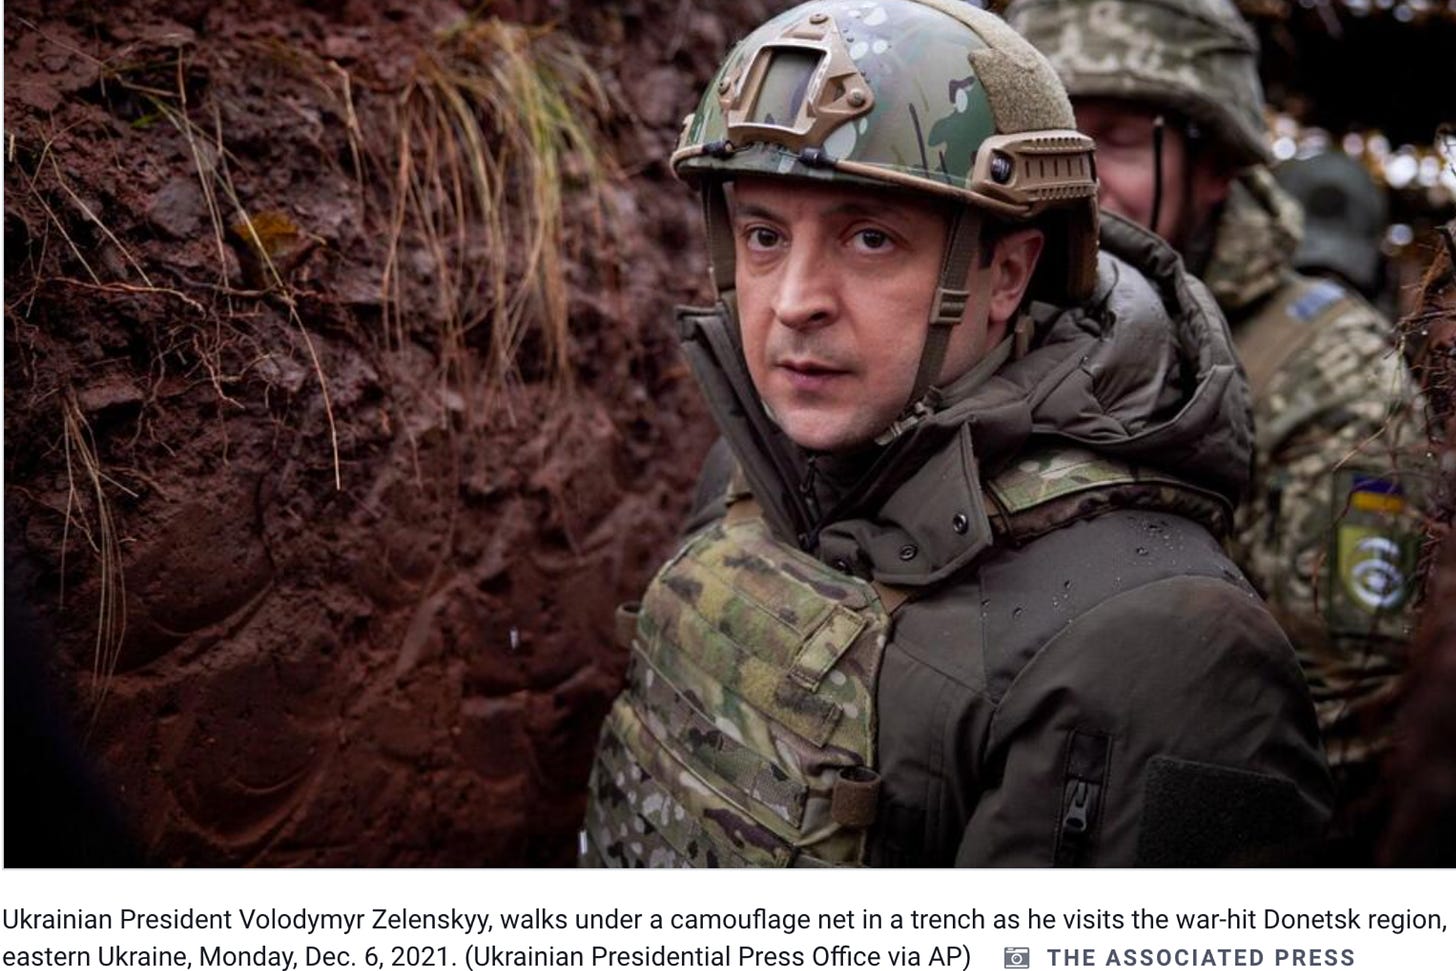 Ukrainian president in a muddy bunker in army gear